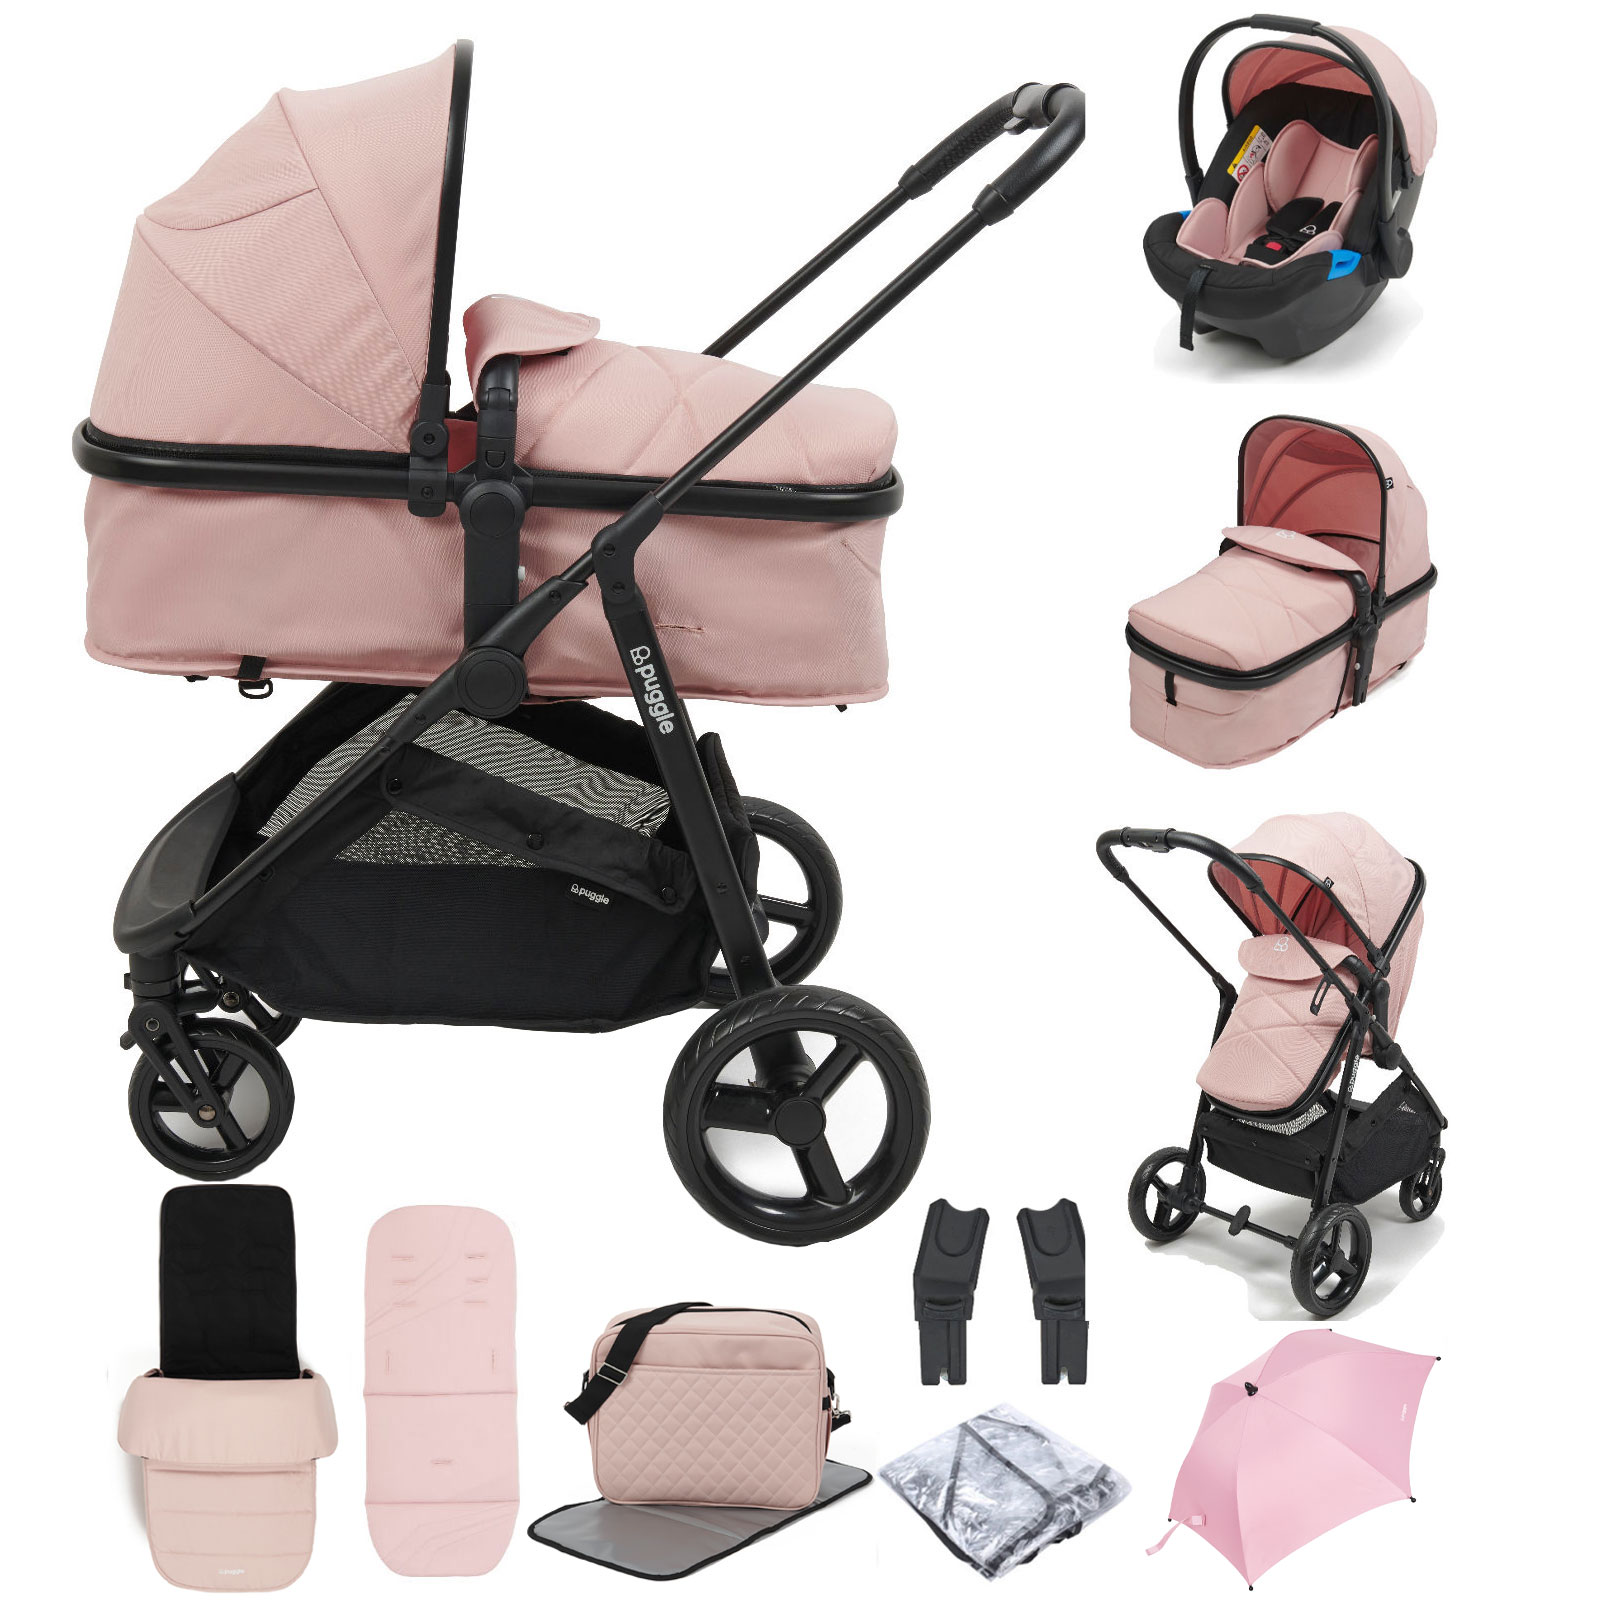 Puggle Monaco XT 2in1 Pram Pushchair Travel System with Footmuff, Changing Bag & Parasol - Blush Pink